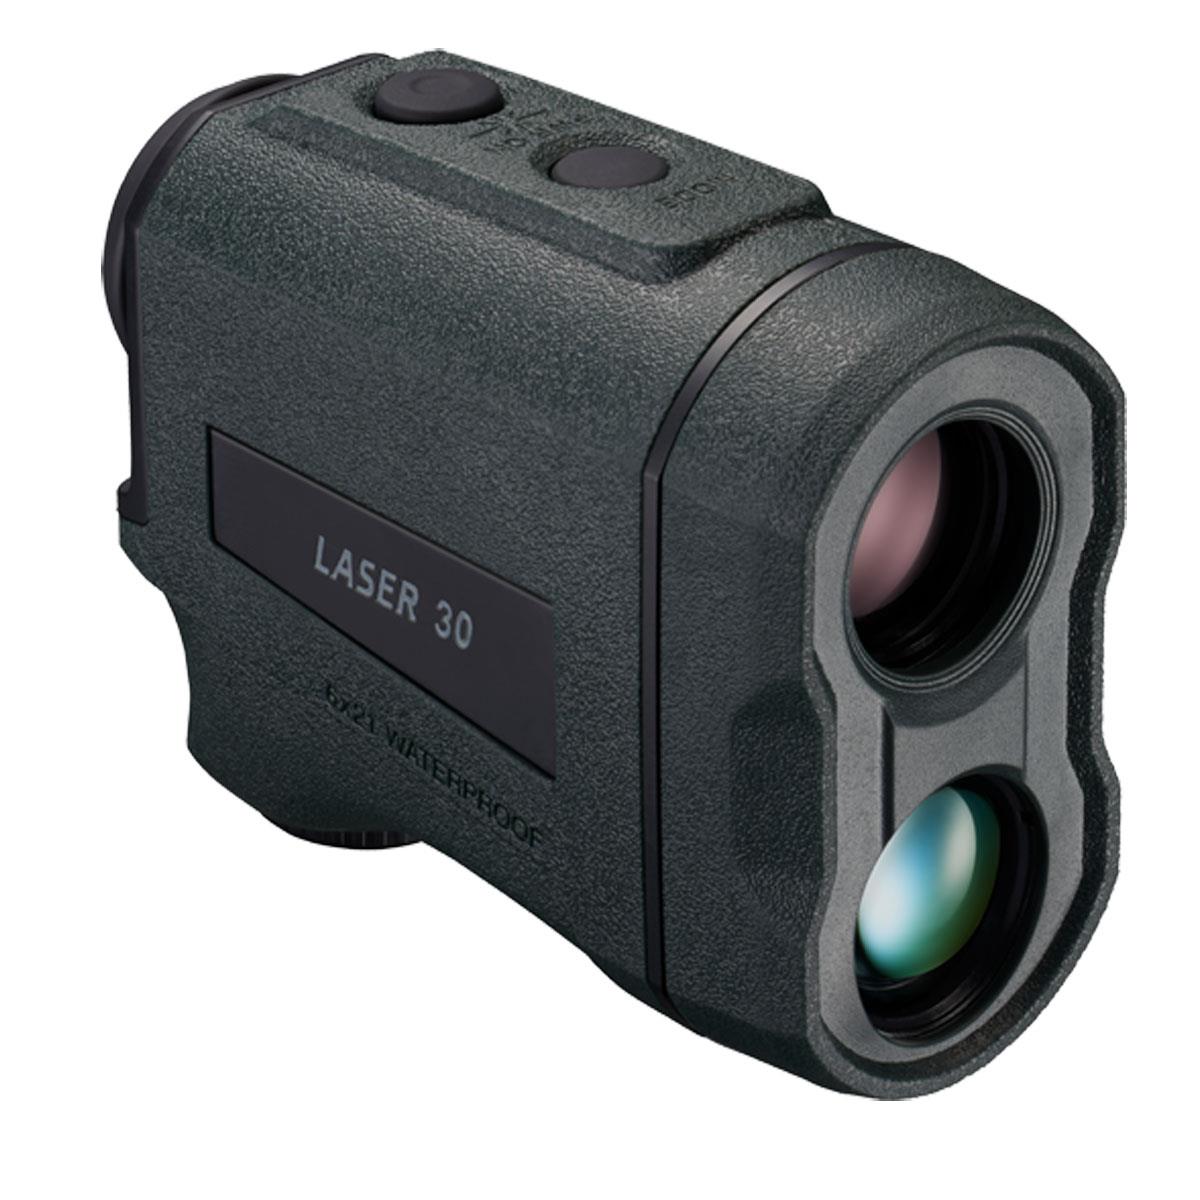 Image of Nikon LASER 30 6x Laser Rangefinder